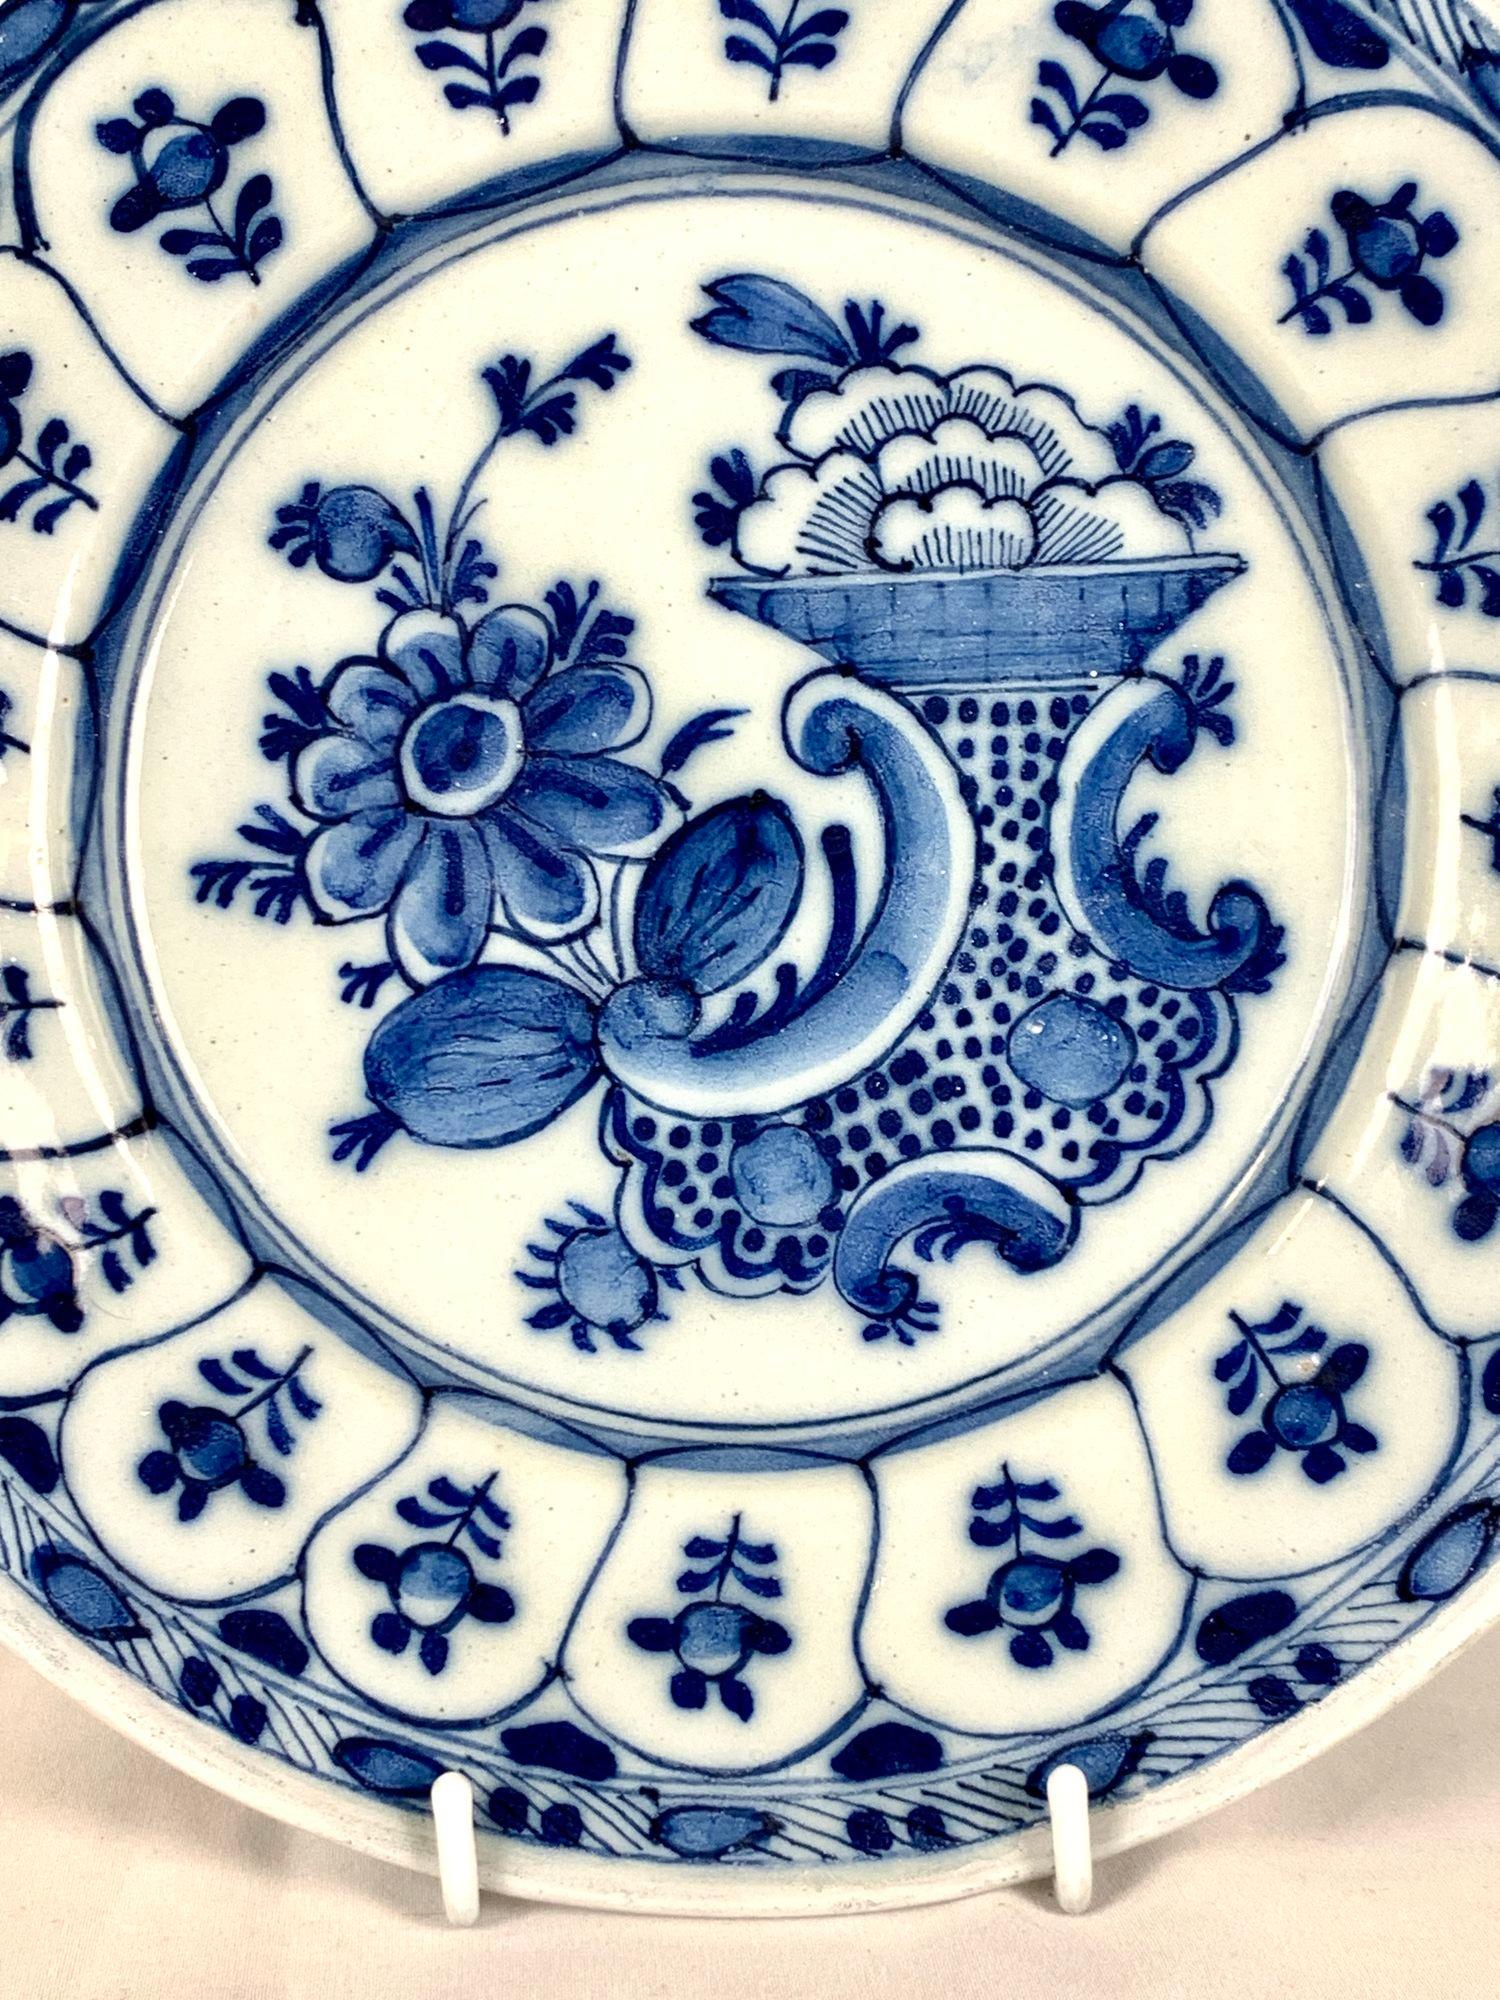 Dieser blau-weiße Delfter Teller aus dem 18. Jahrhundert wurde um 1780 handbemalt.
Die lebendige Szene in der Mitte zeigt Blumen, Blütenknospen und eine gepunktete Vase.
Die Bordüre ist mit 17 spitzbogigen Tafeln verziert, die jeweils eine einzelne